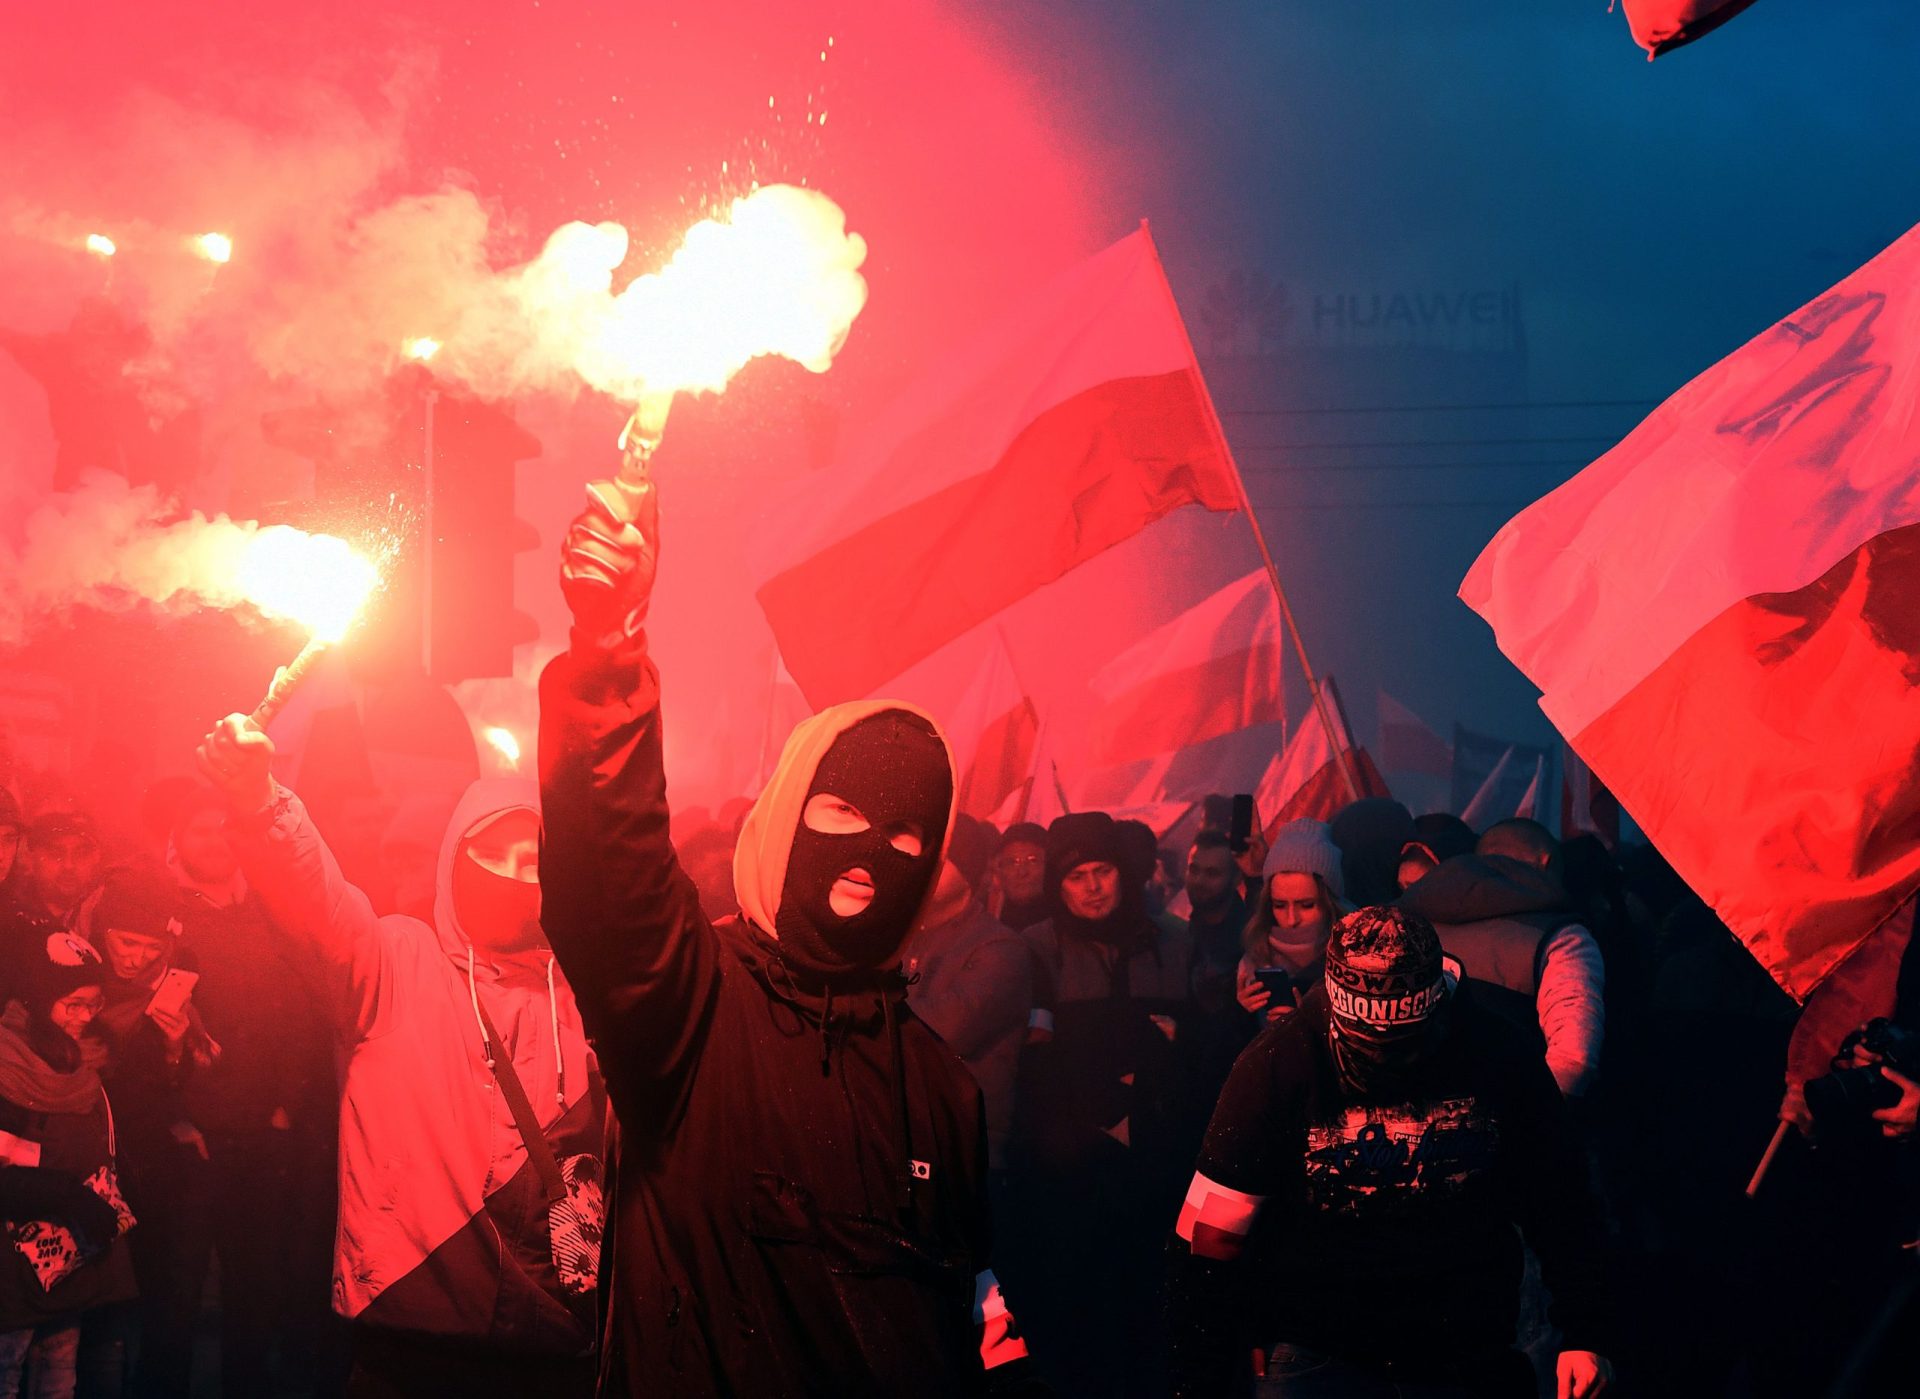 Polónia.  Extrema-direita avança pelas ruas com cânticos xenófobos